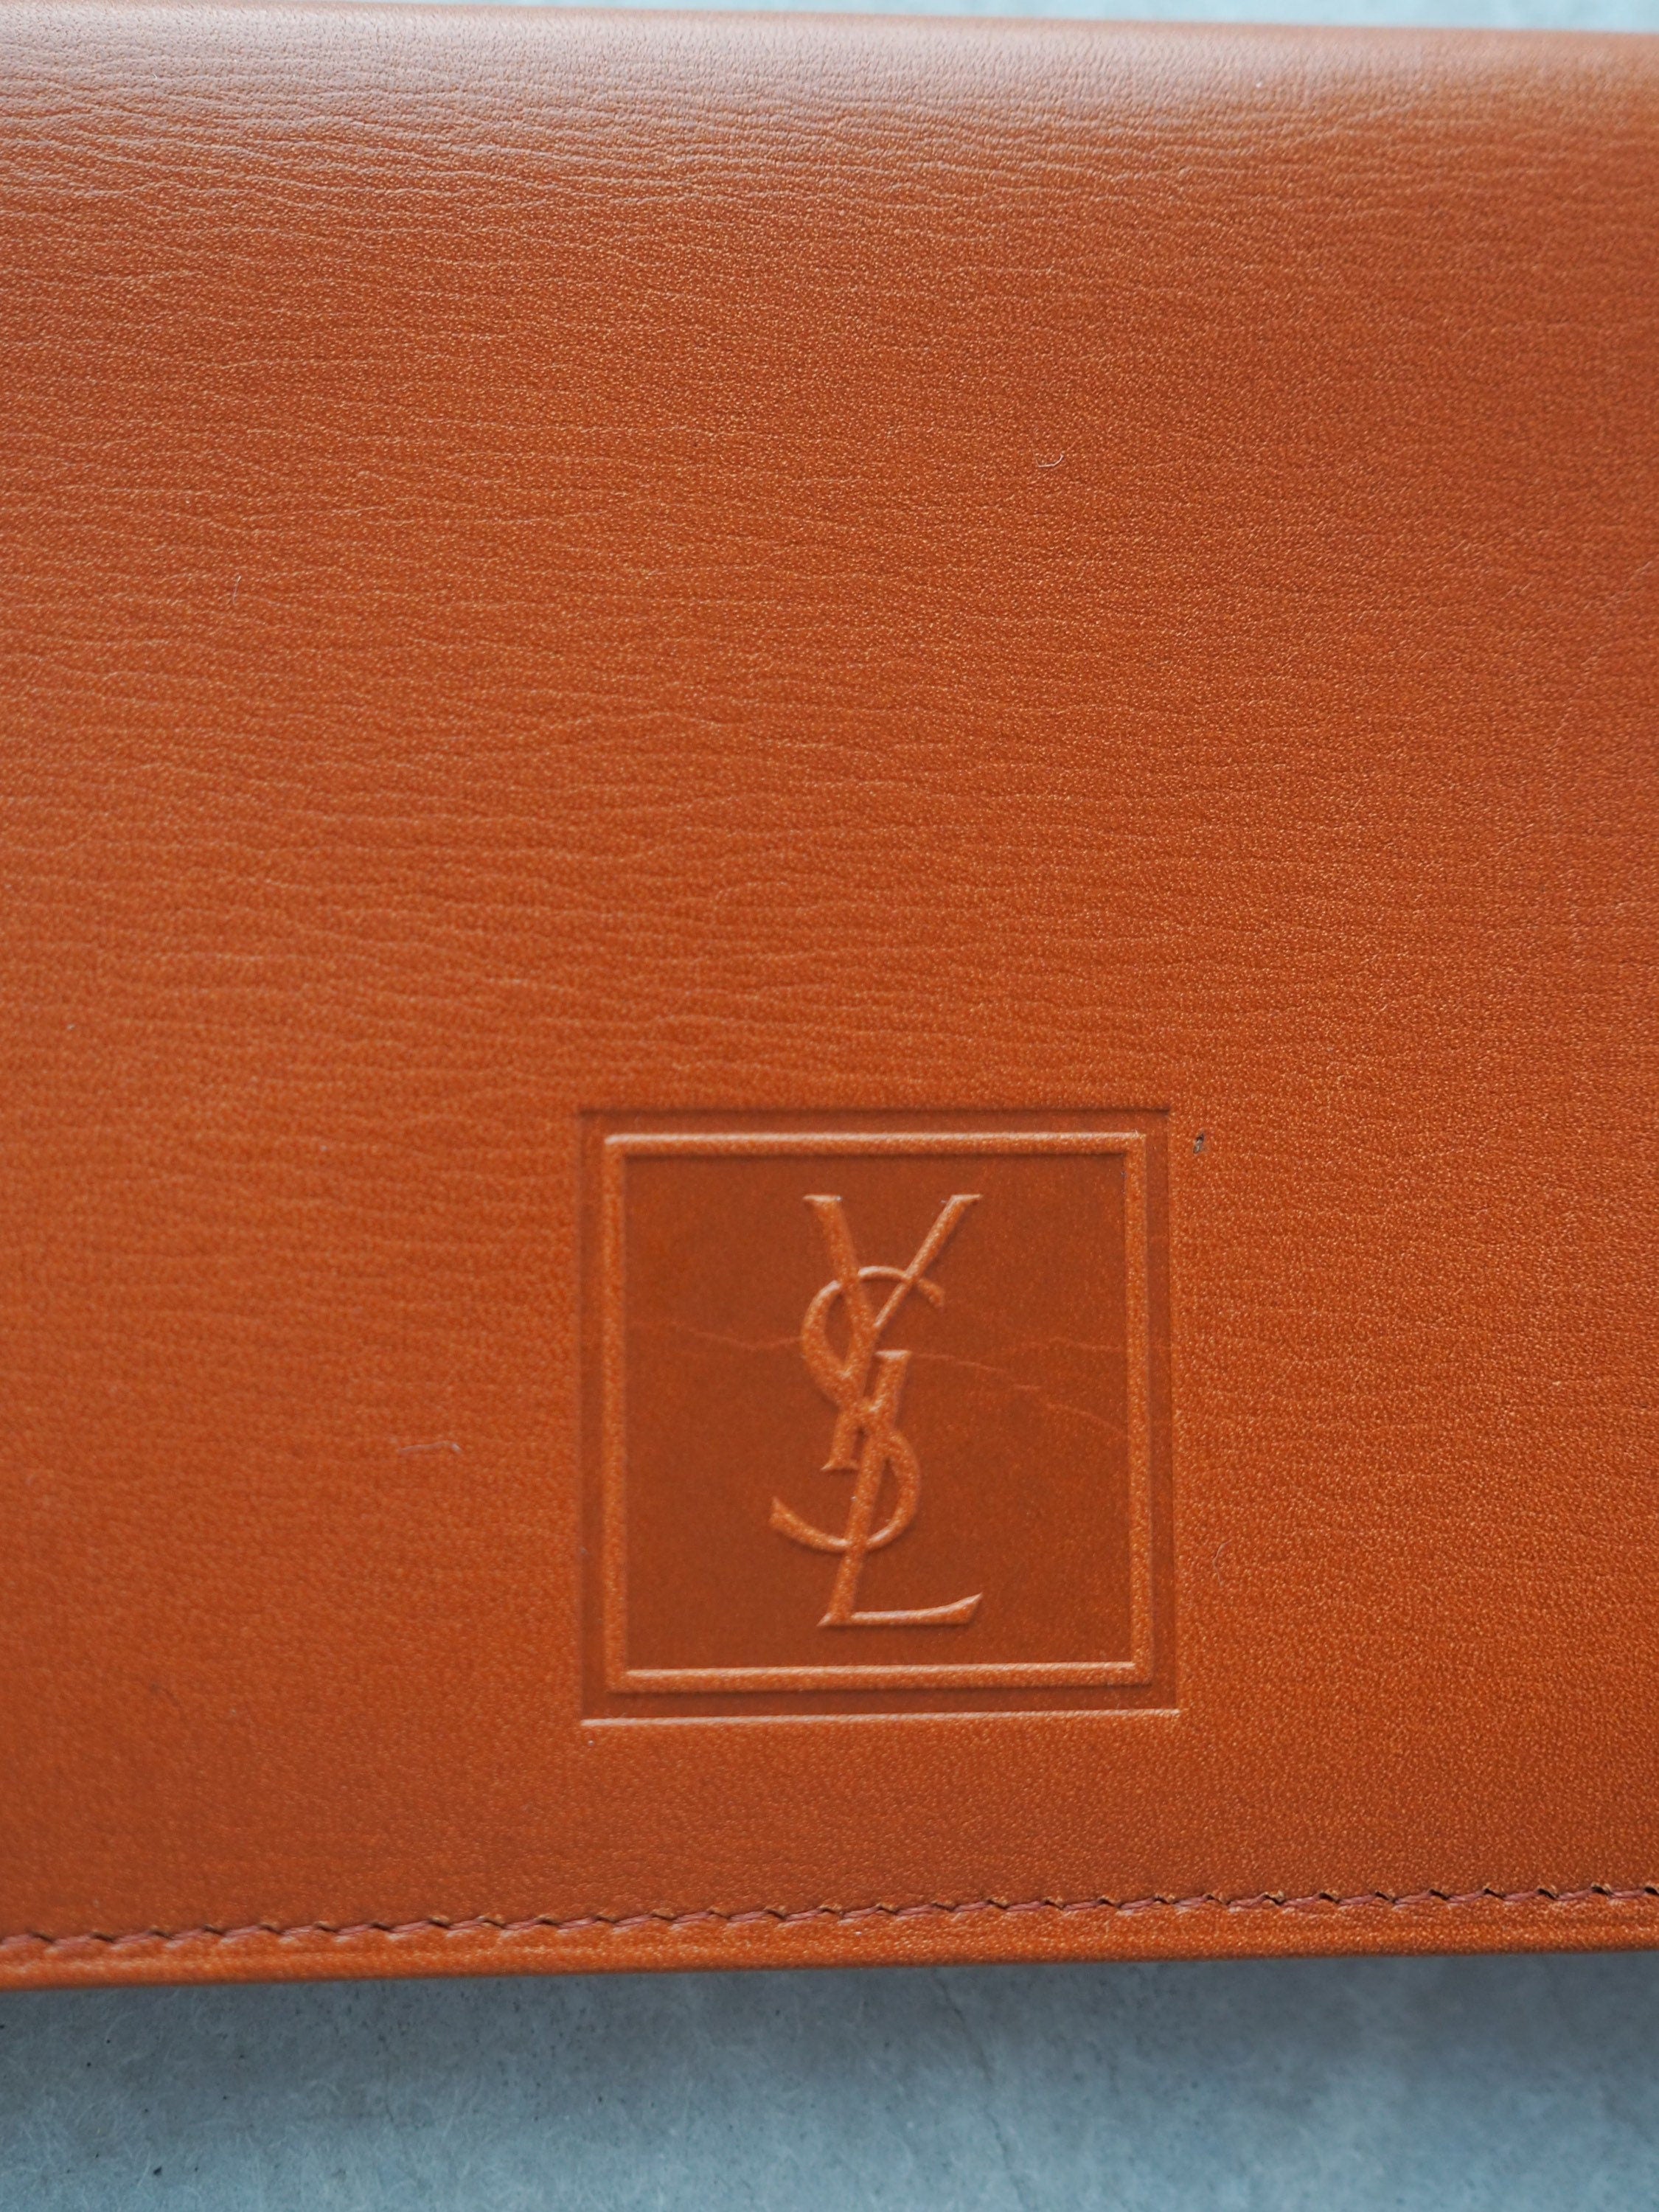 Yves Saint Laurent Card Pass ID Case Purse Box Vintage Authentic